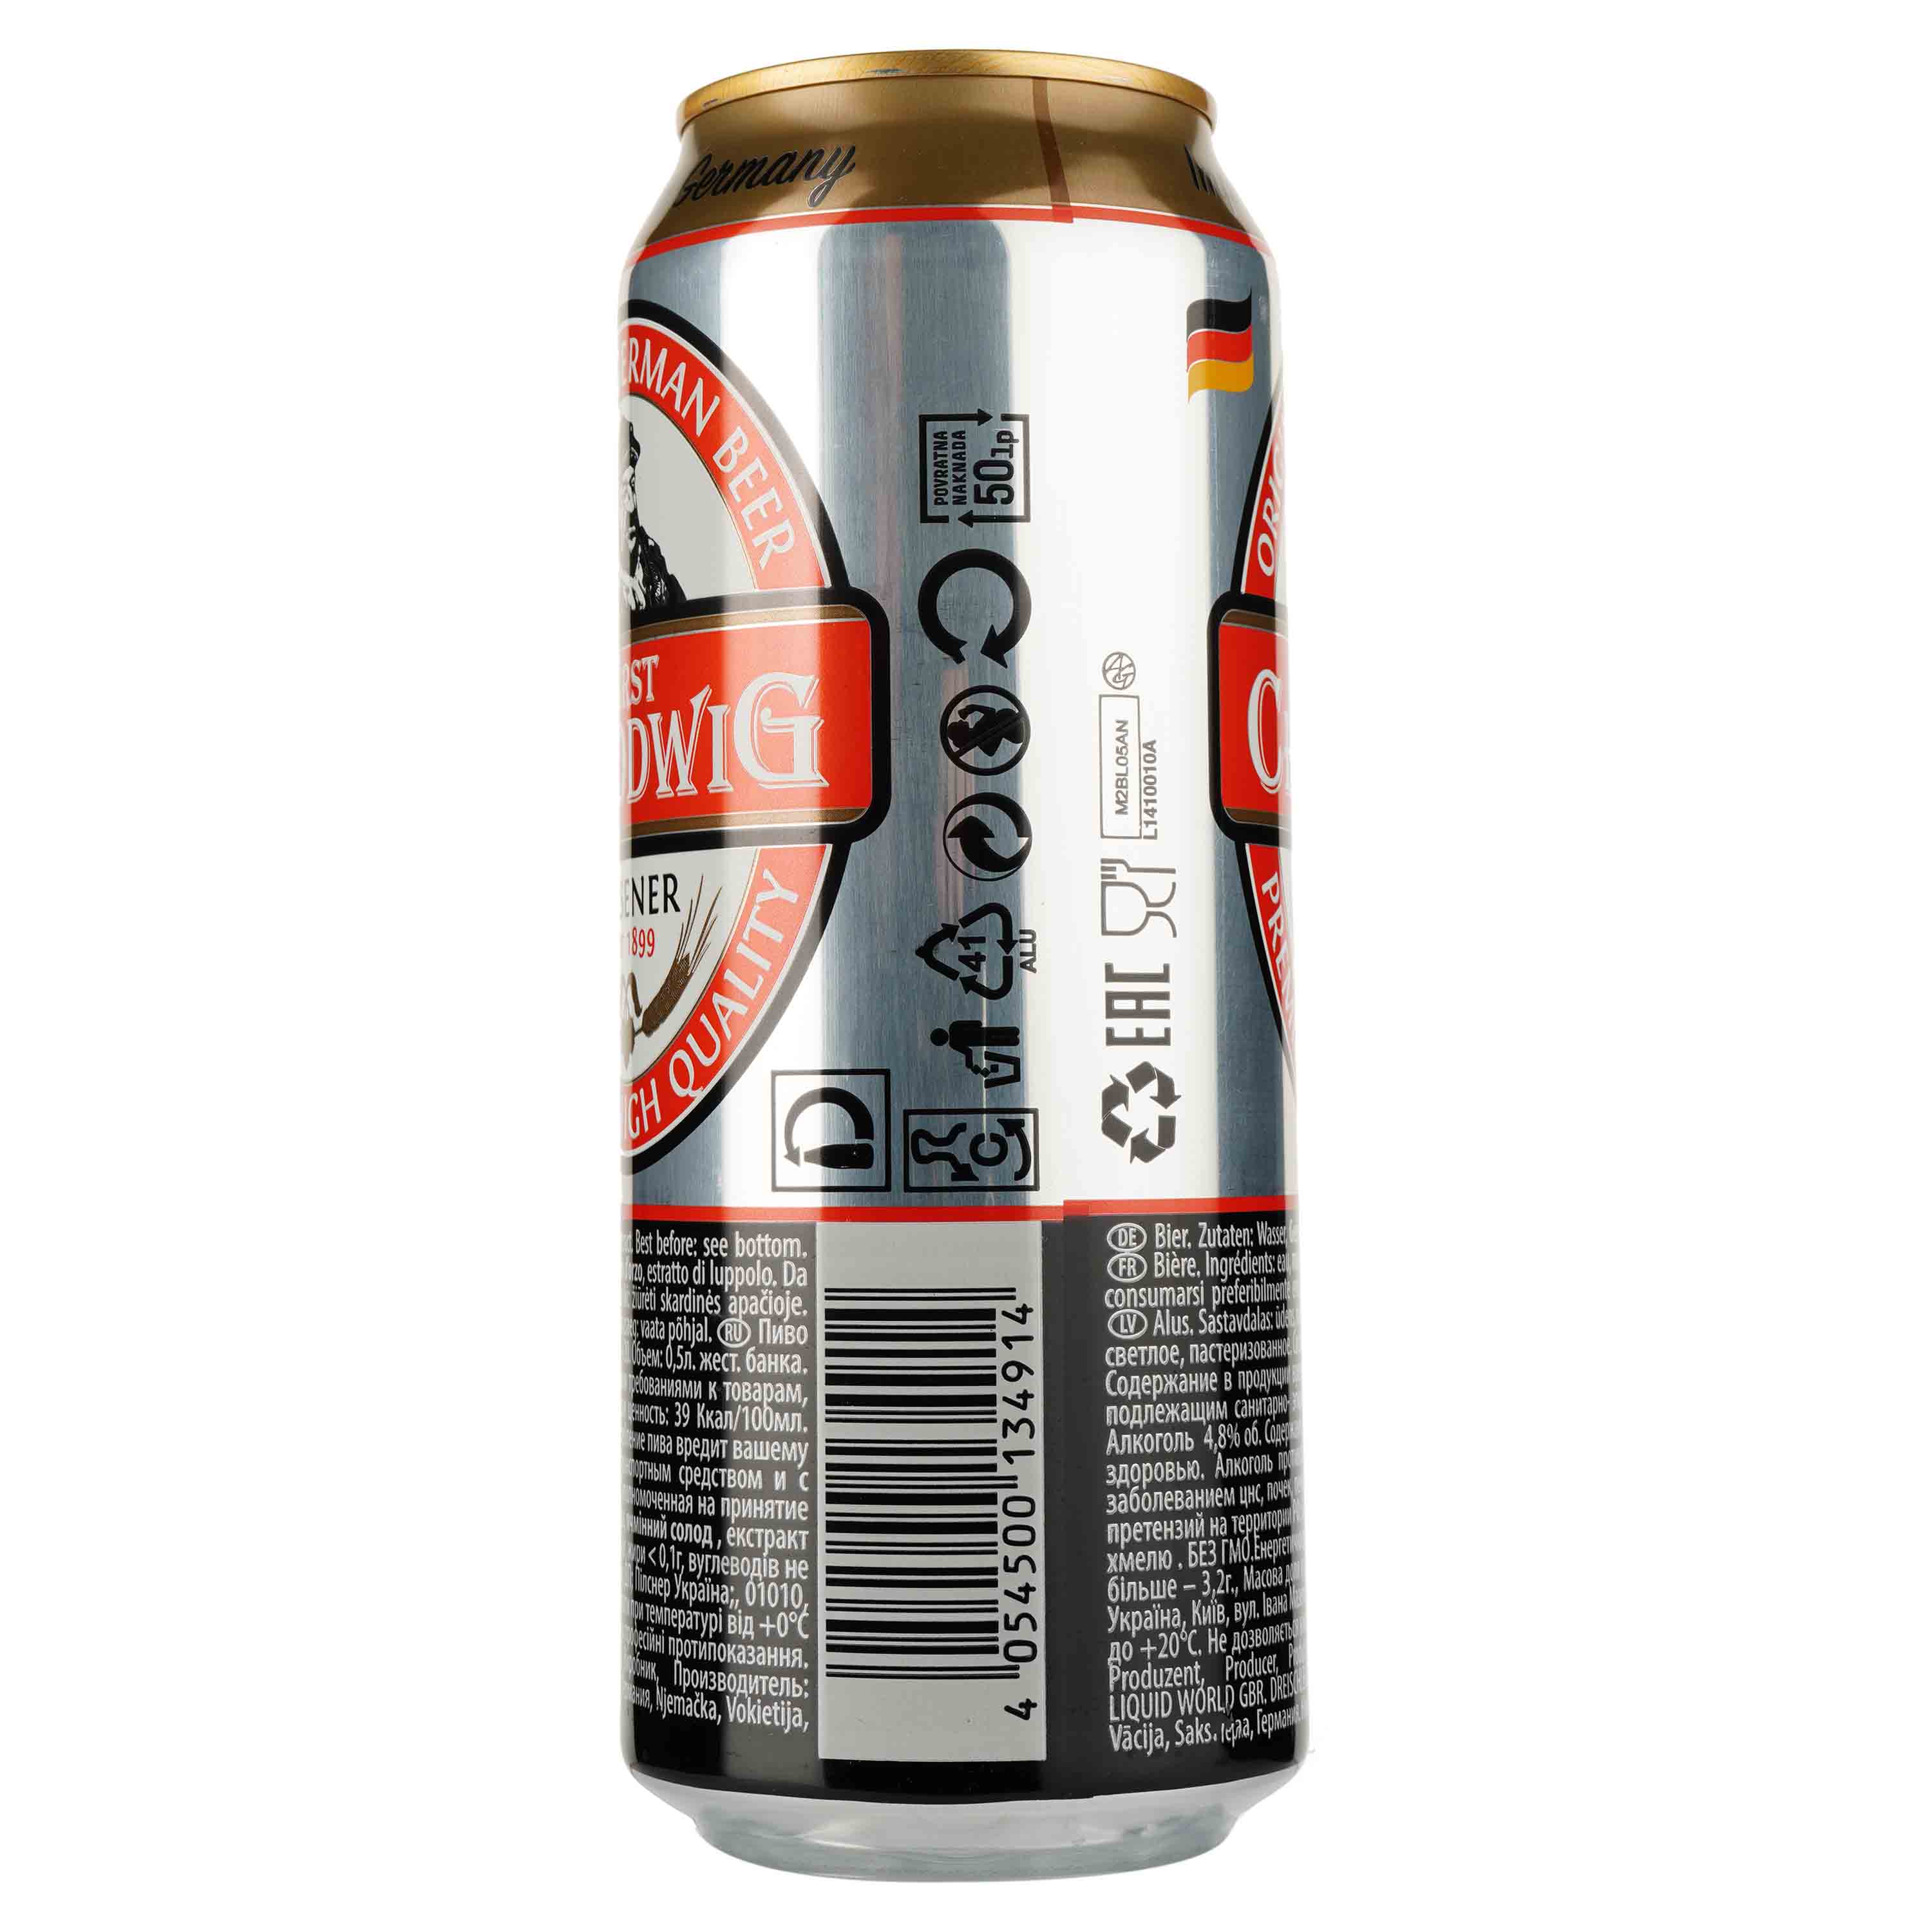 Пиво Furst Chlodwig Premium светлое, 4.8%, ж/б, 0.5 л - фото 2